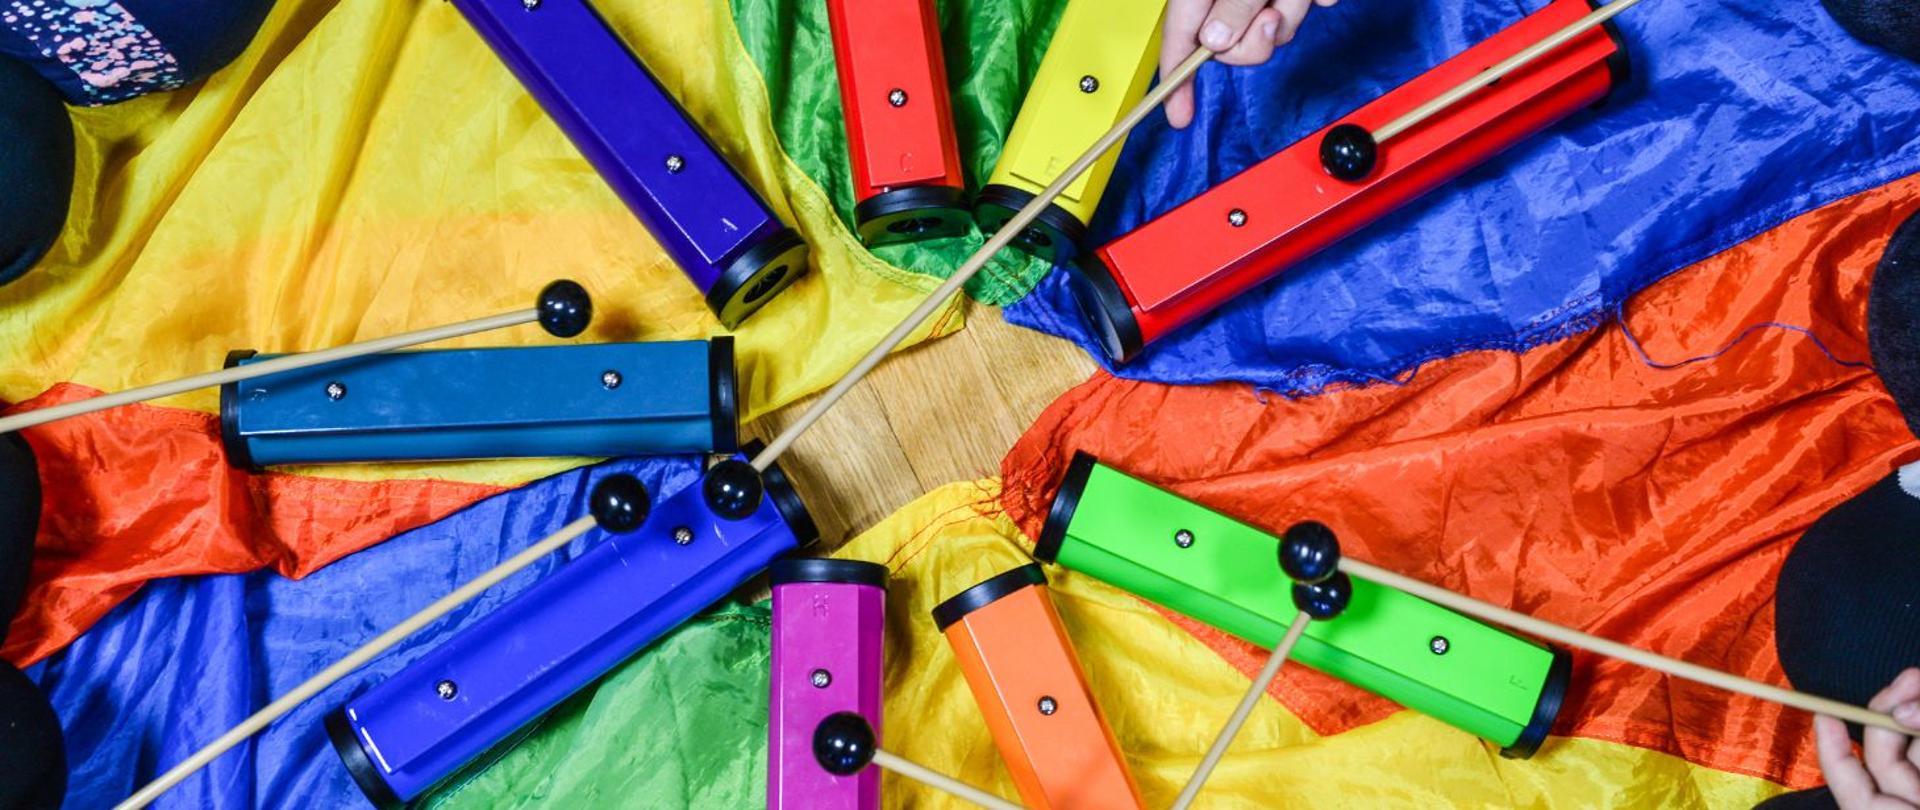 kolorowe zdjęcie przedstawia kolorowe sztabki metalofonu ułożone w kółko na tle chusty animacyjnej, oraz kolana i dłonie grających na sztabkach dzieci